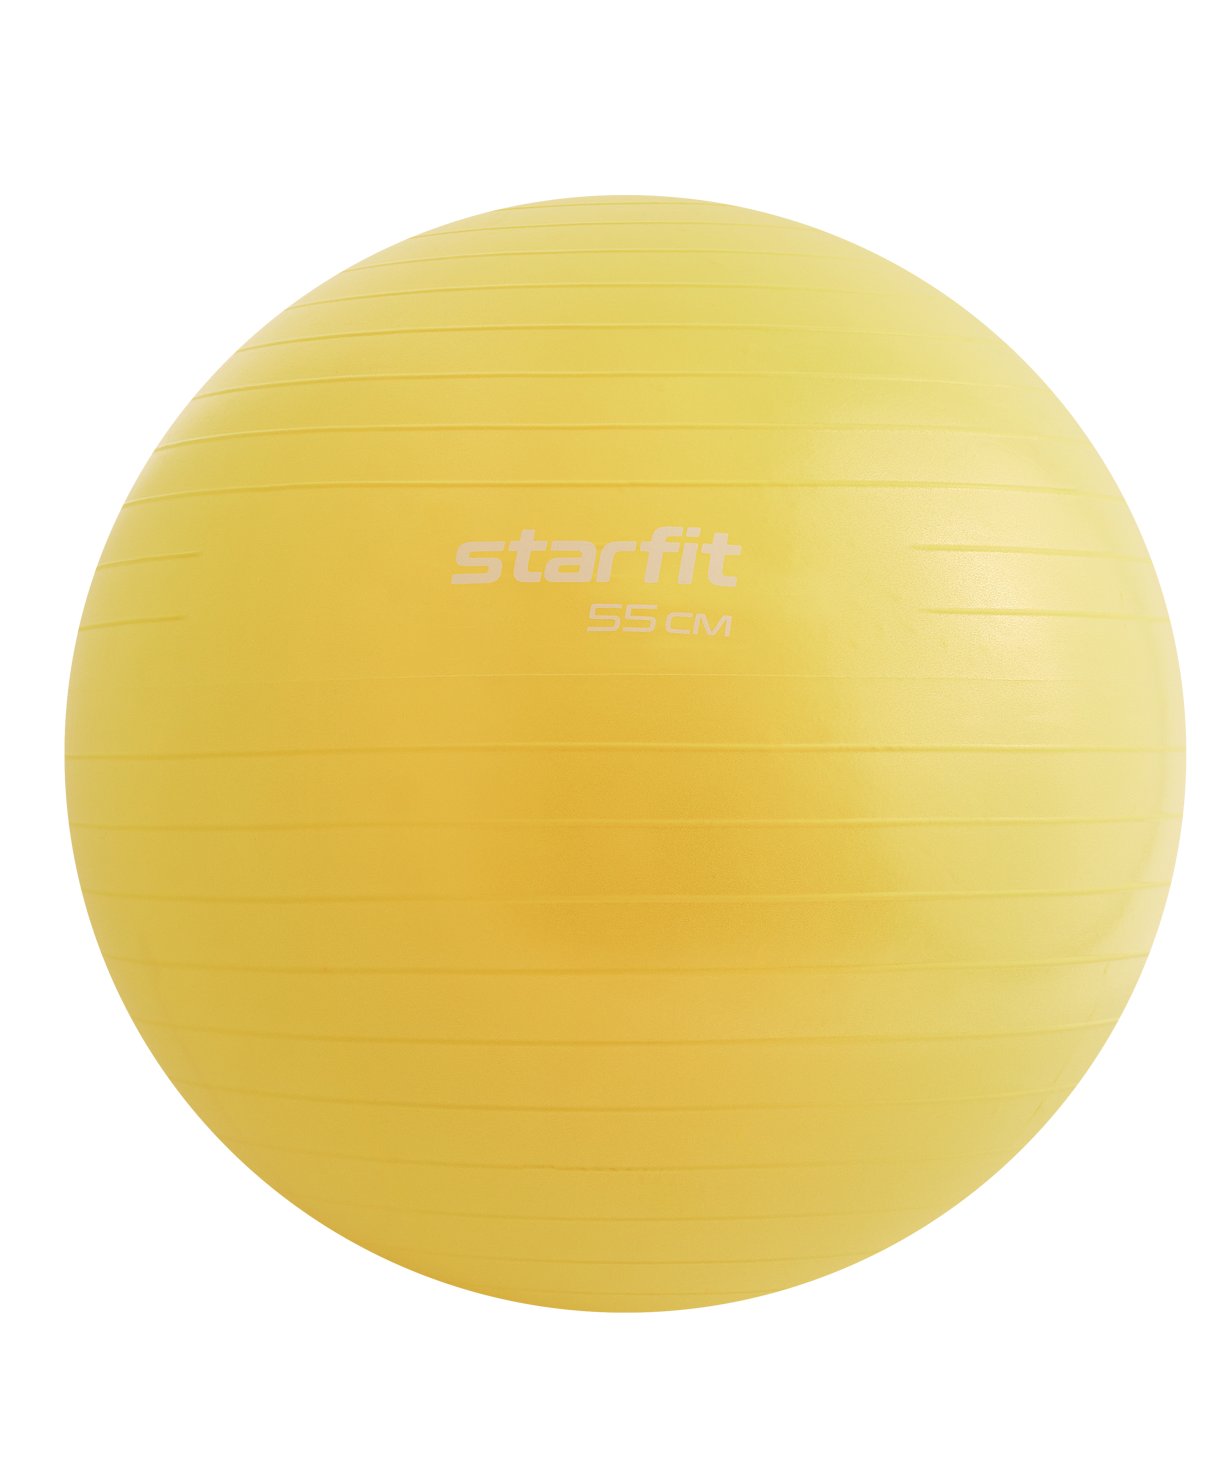 фото Мяч starfit core желтый пастельный, 55 см